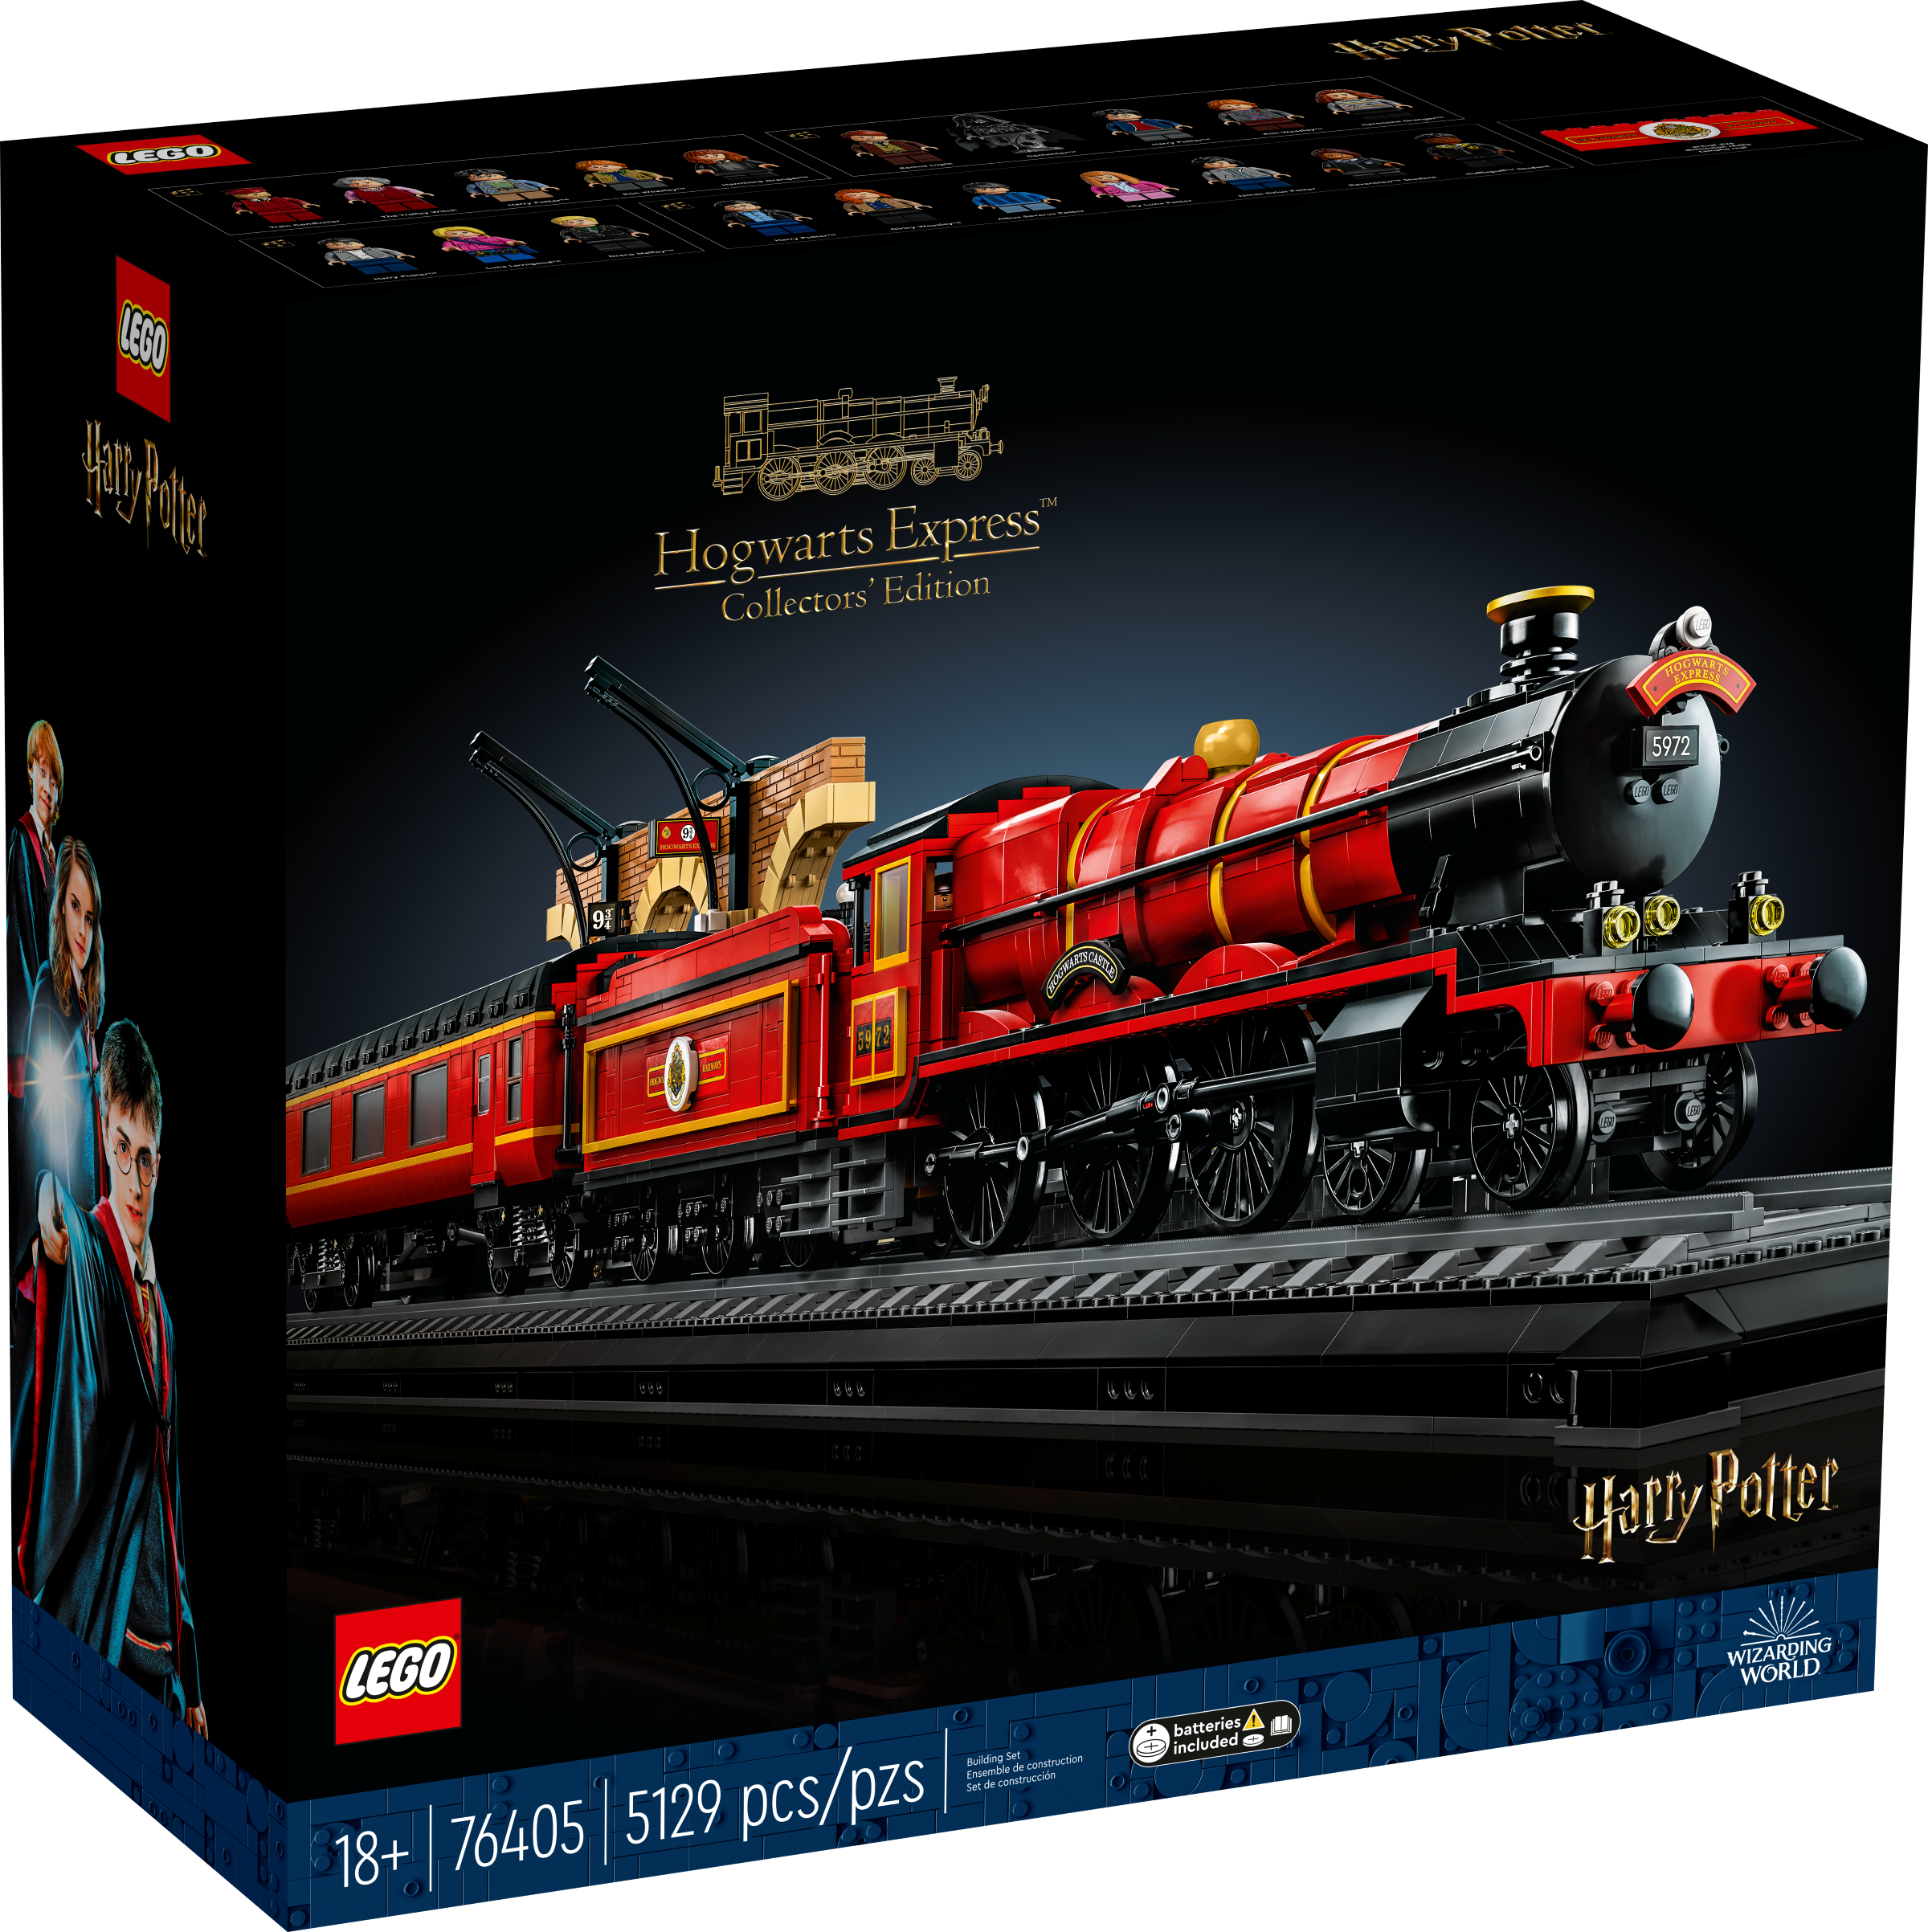 LEGO Harry Potter Hogwarts Express Sammleredition (76405) - im GOLDSTIEN.SHOP verfügbar mit Gratisversand ab Schweizer Lager! (5702017152691)